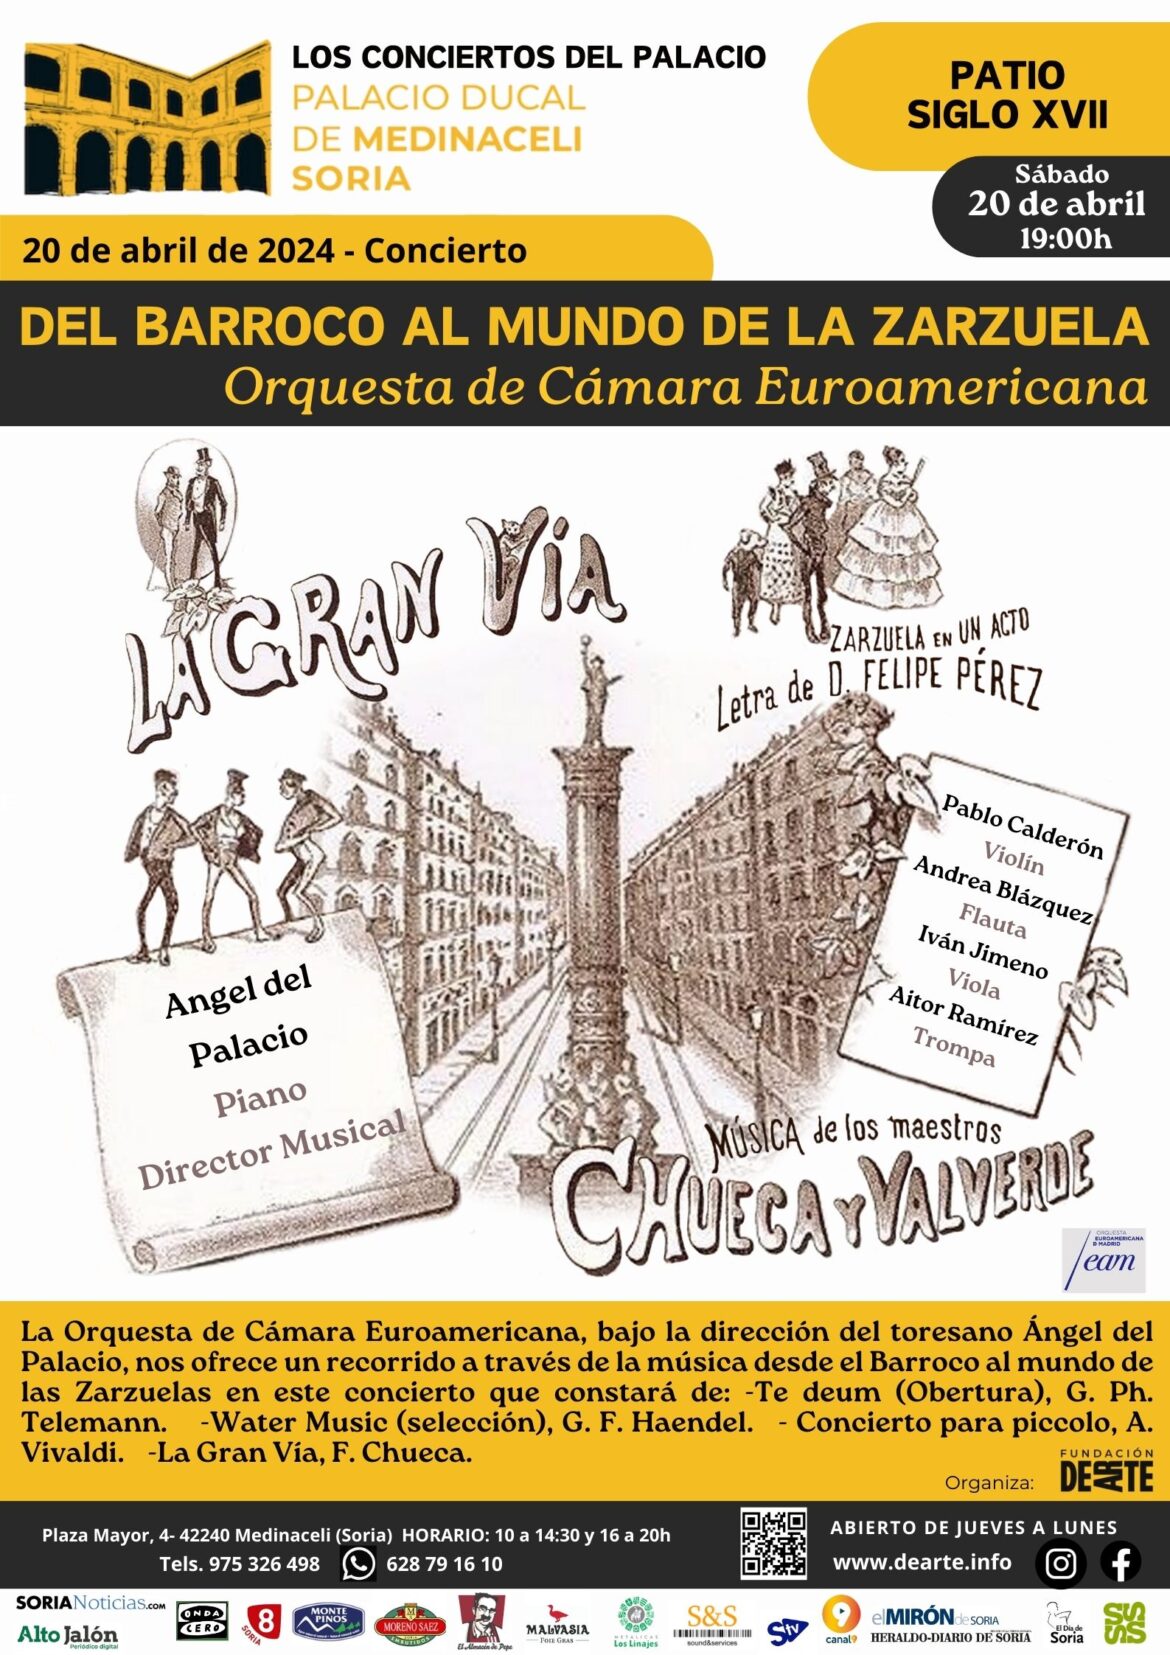 Concierto ORQUESTA DE CÁMARA EUROAMERICANA. “DEL BARROCO AL MUNDO DE LA ZARZUELA” Sábado 20 abril, 19:00h.